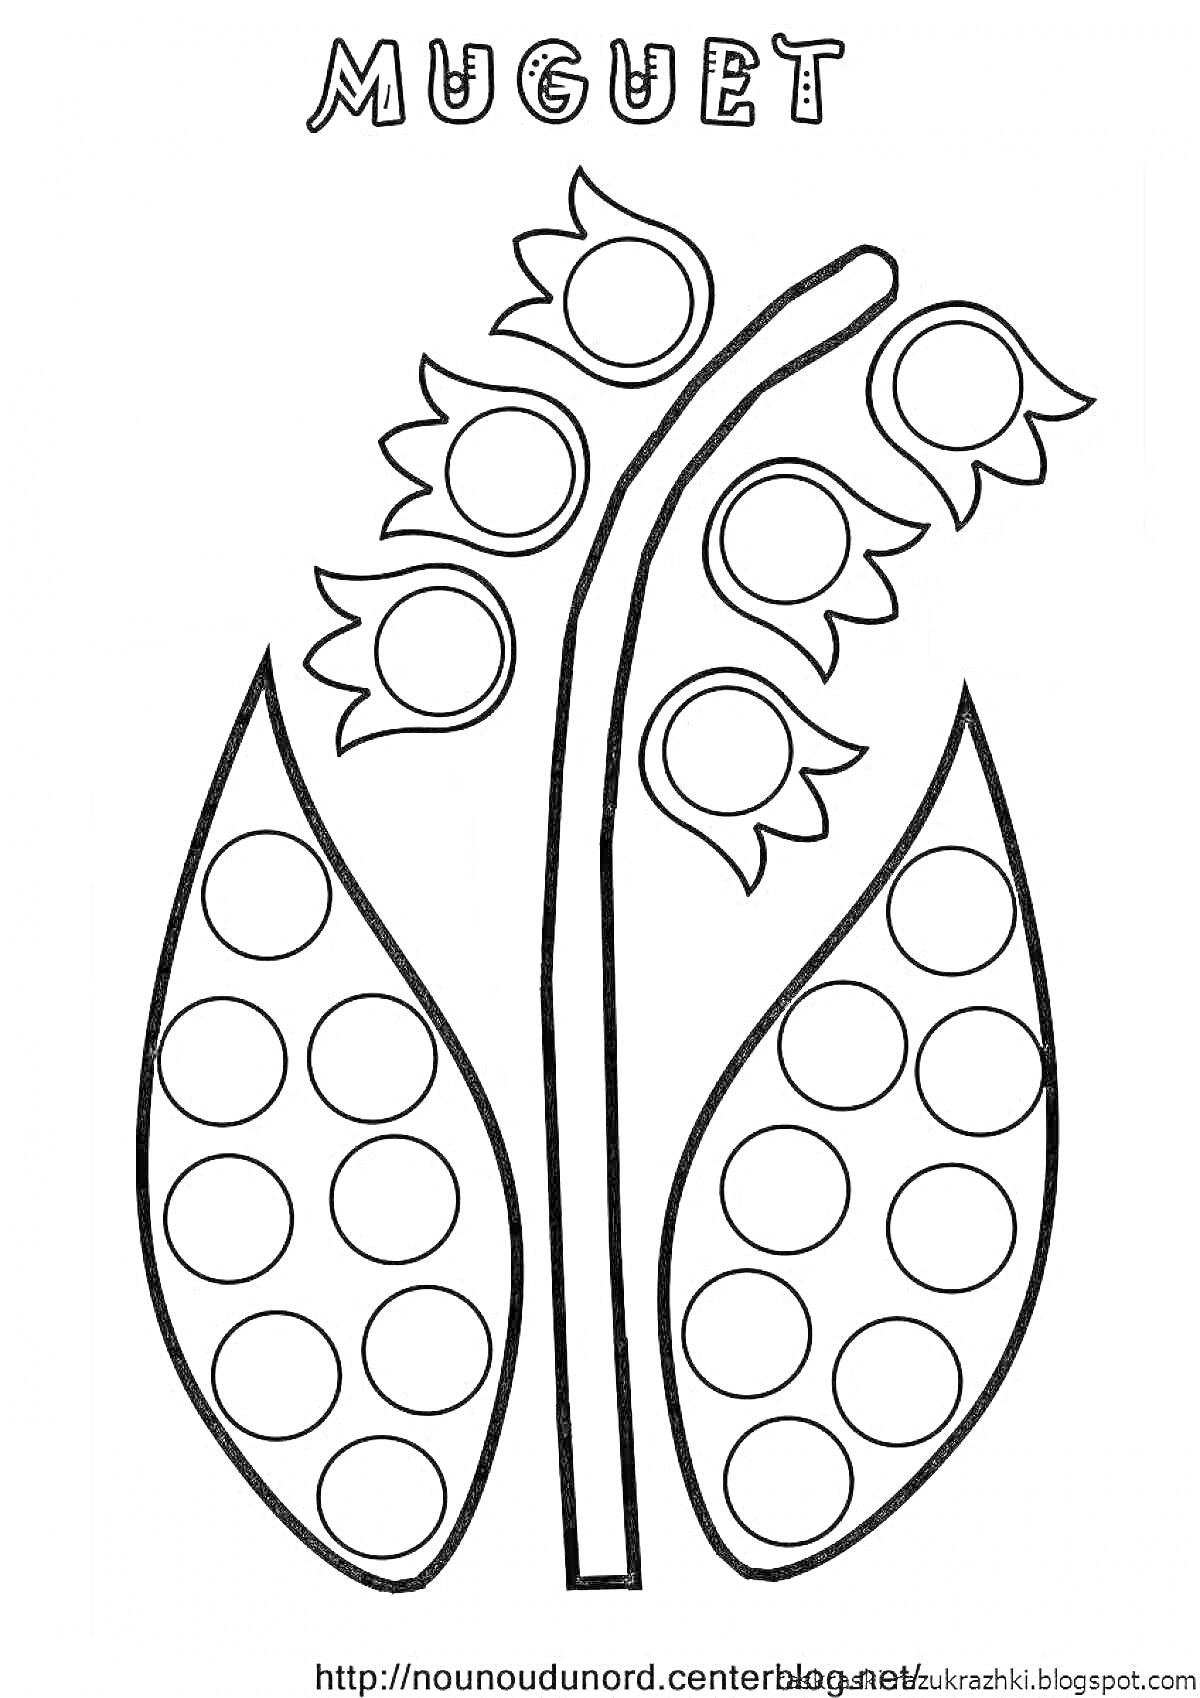 Раскраска Стебель и листья ландыша с кружками для лепки пластилином